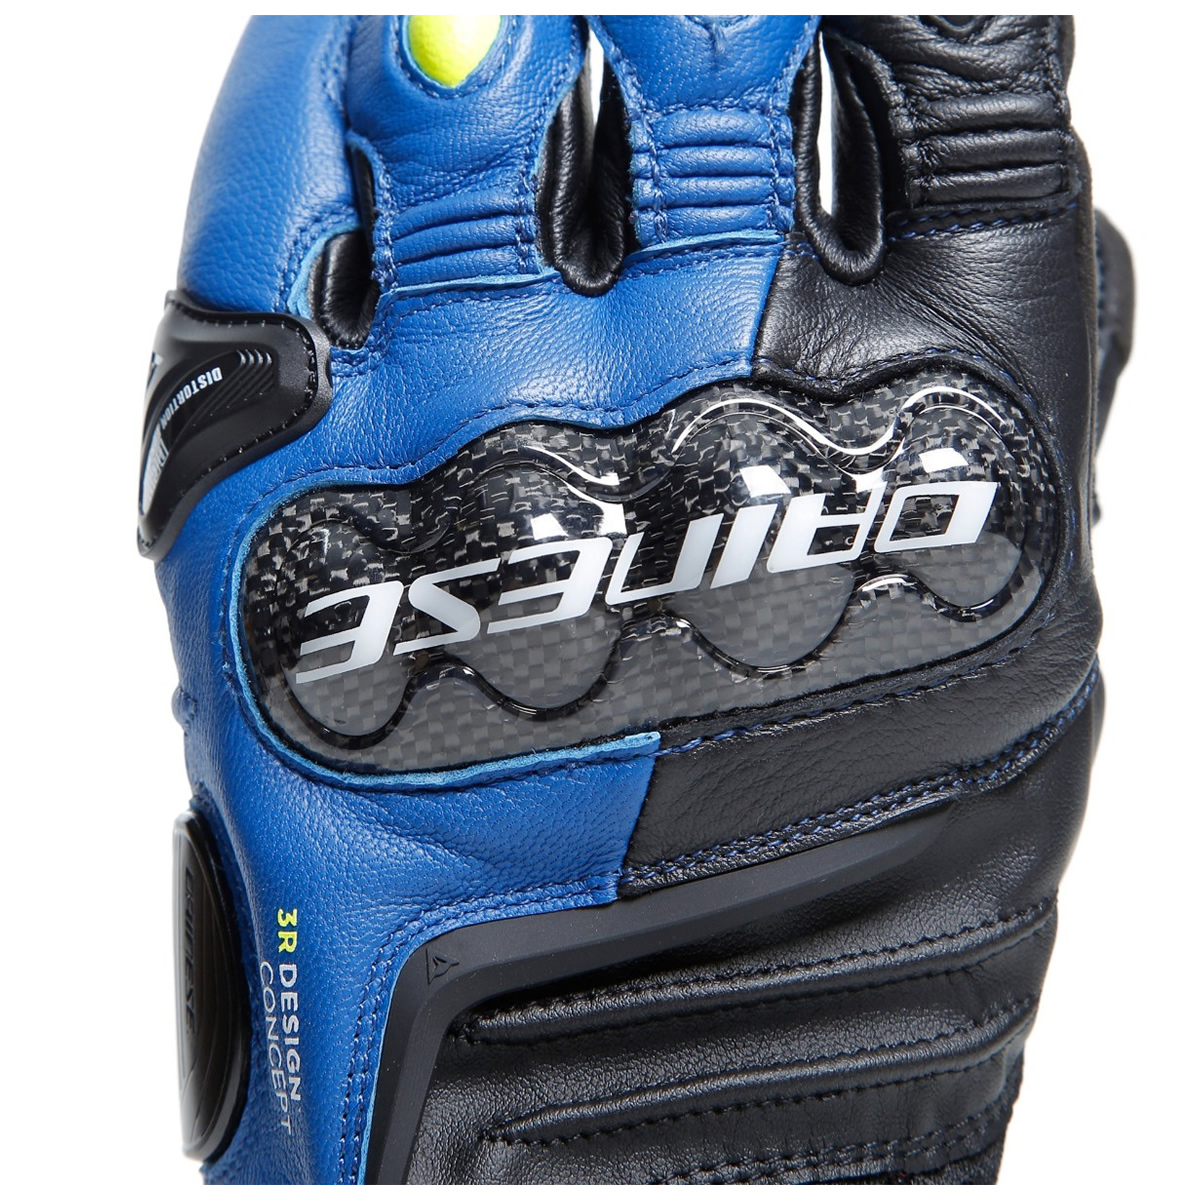 Dainese Handschuhe Carbon 4 Short, blau-schwarz-fluogelb